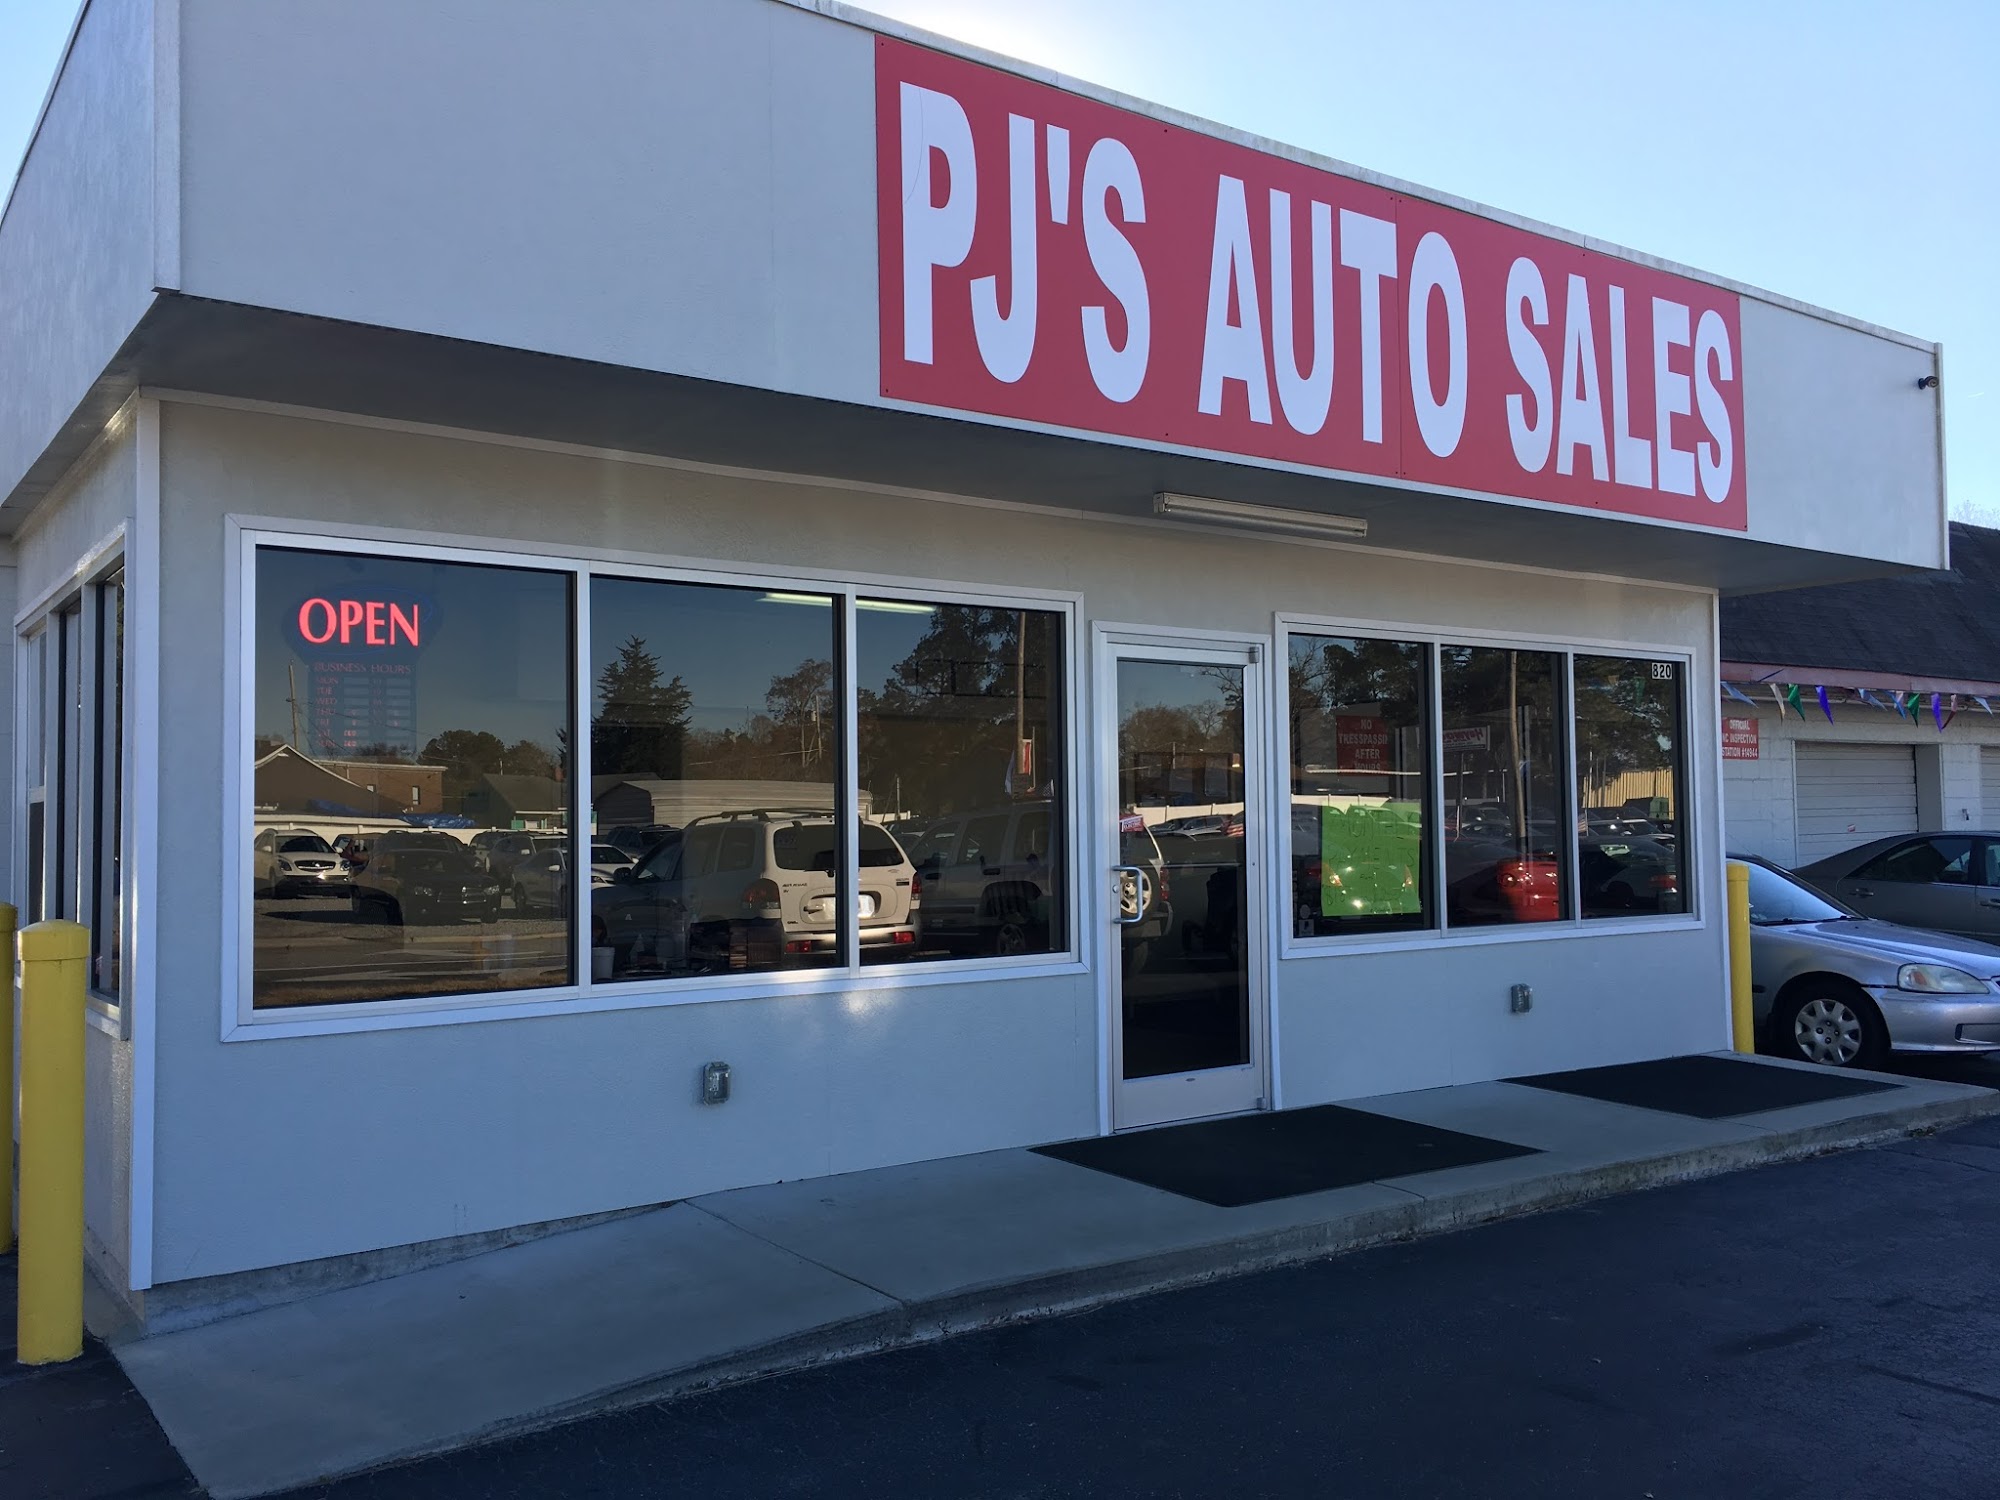 P J's Auto Sales